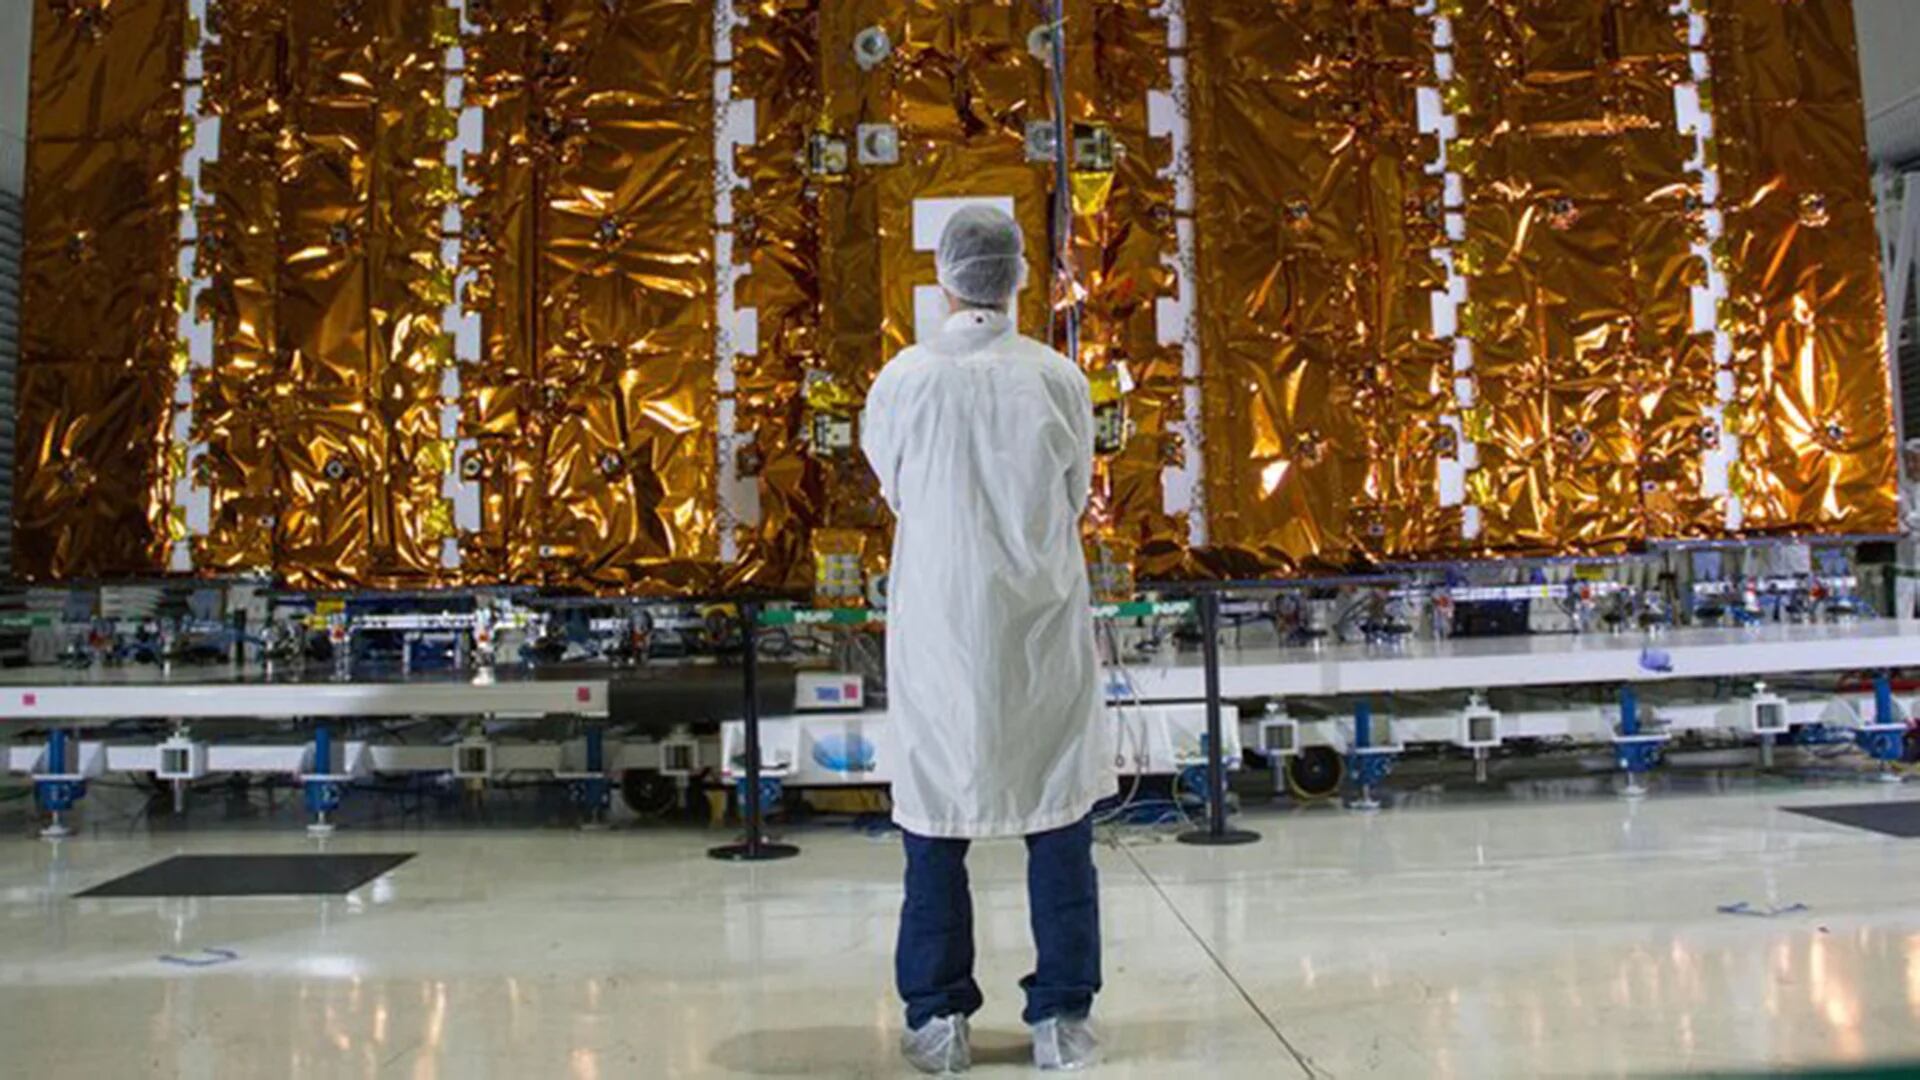 El satélite Saocom posee una tecnología única para observaciones terrestres a partir de su lectura radar (CONAE)